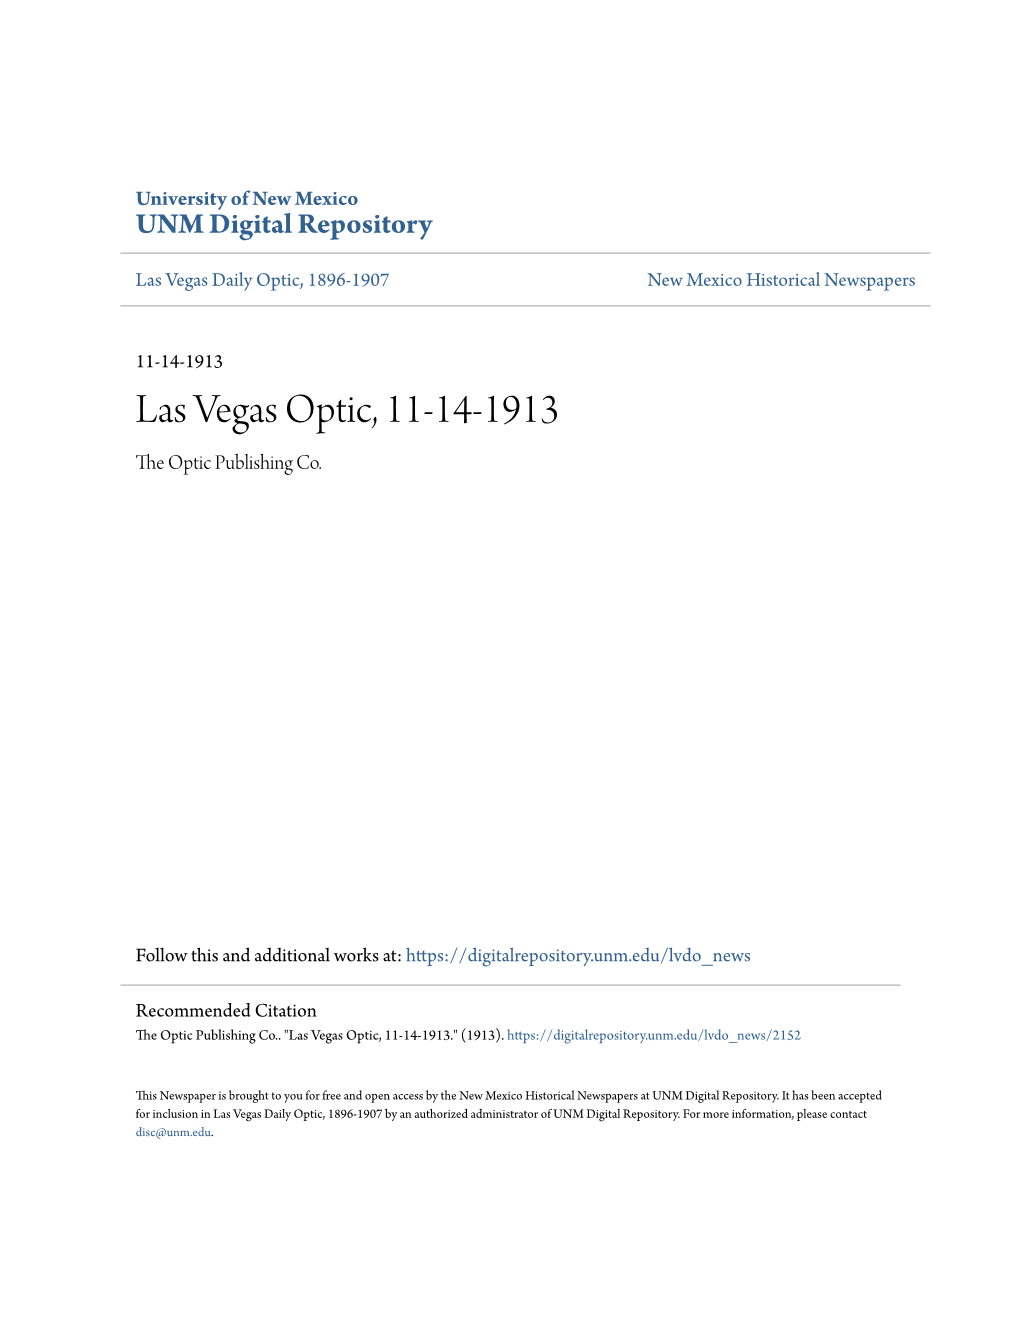 Las Vegas Optic, 11-14-1913 the Optic Publishing Co